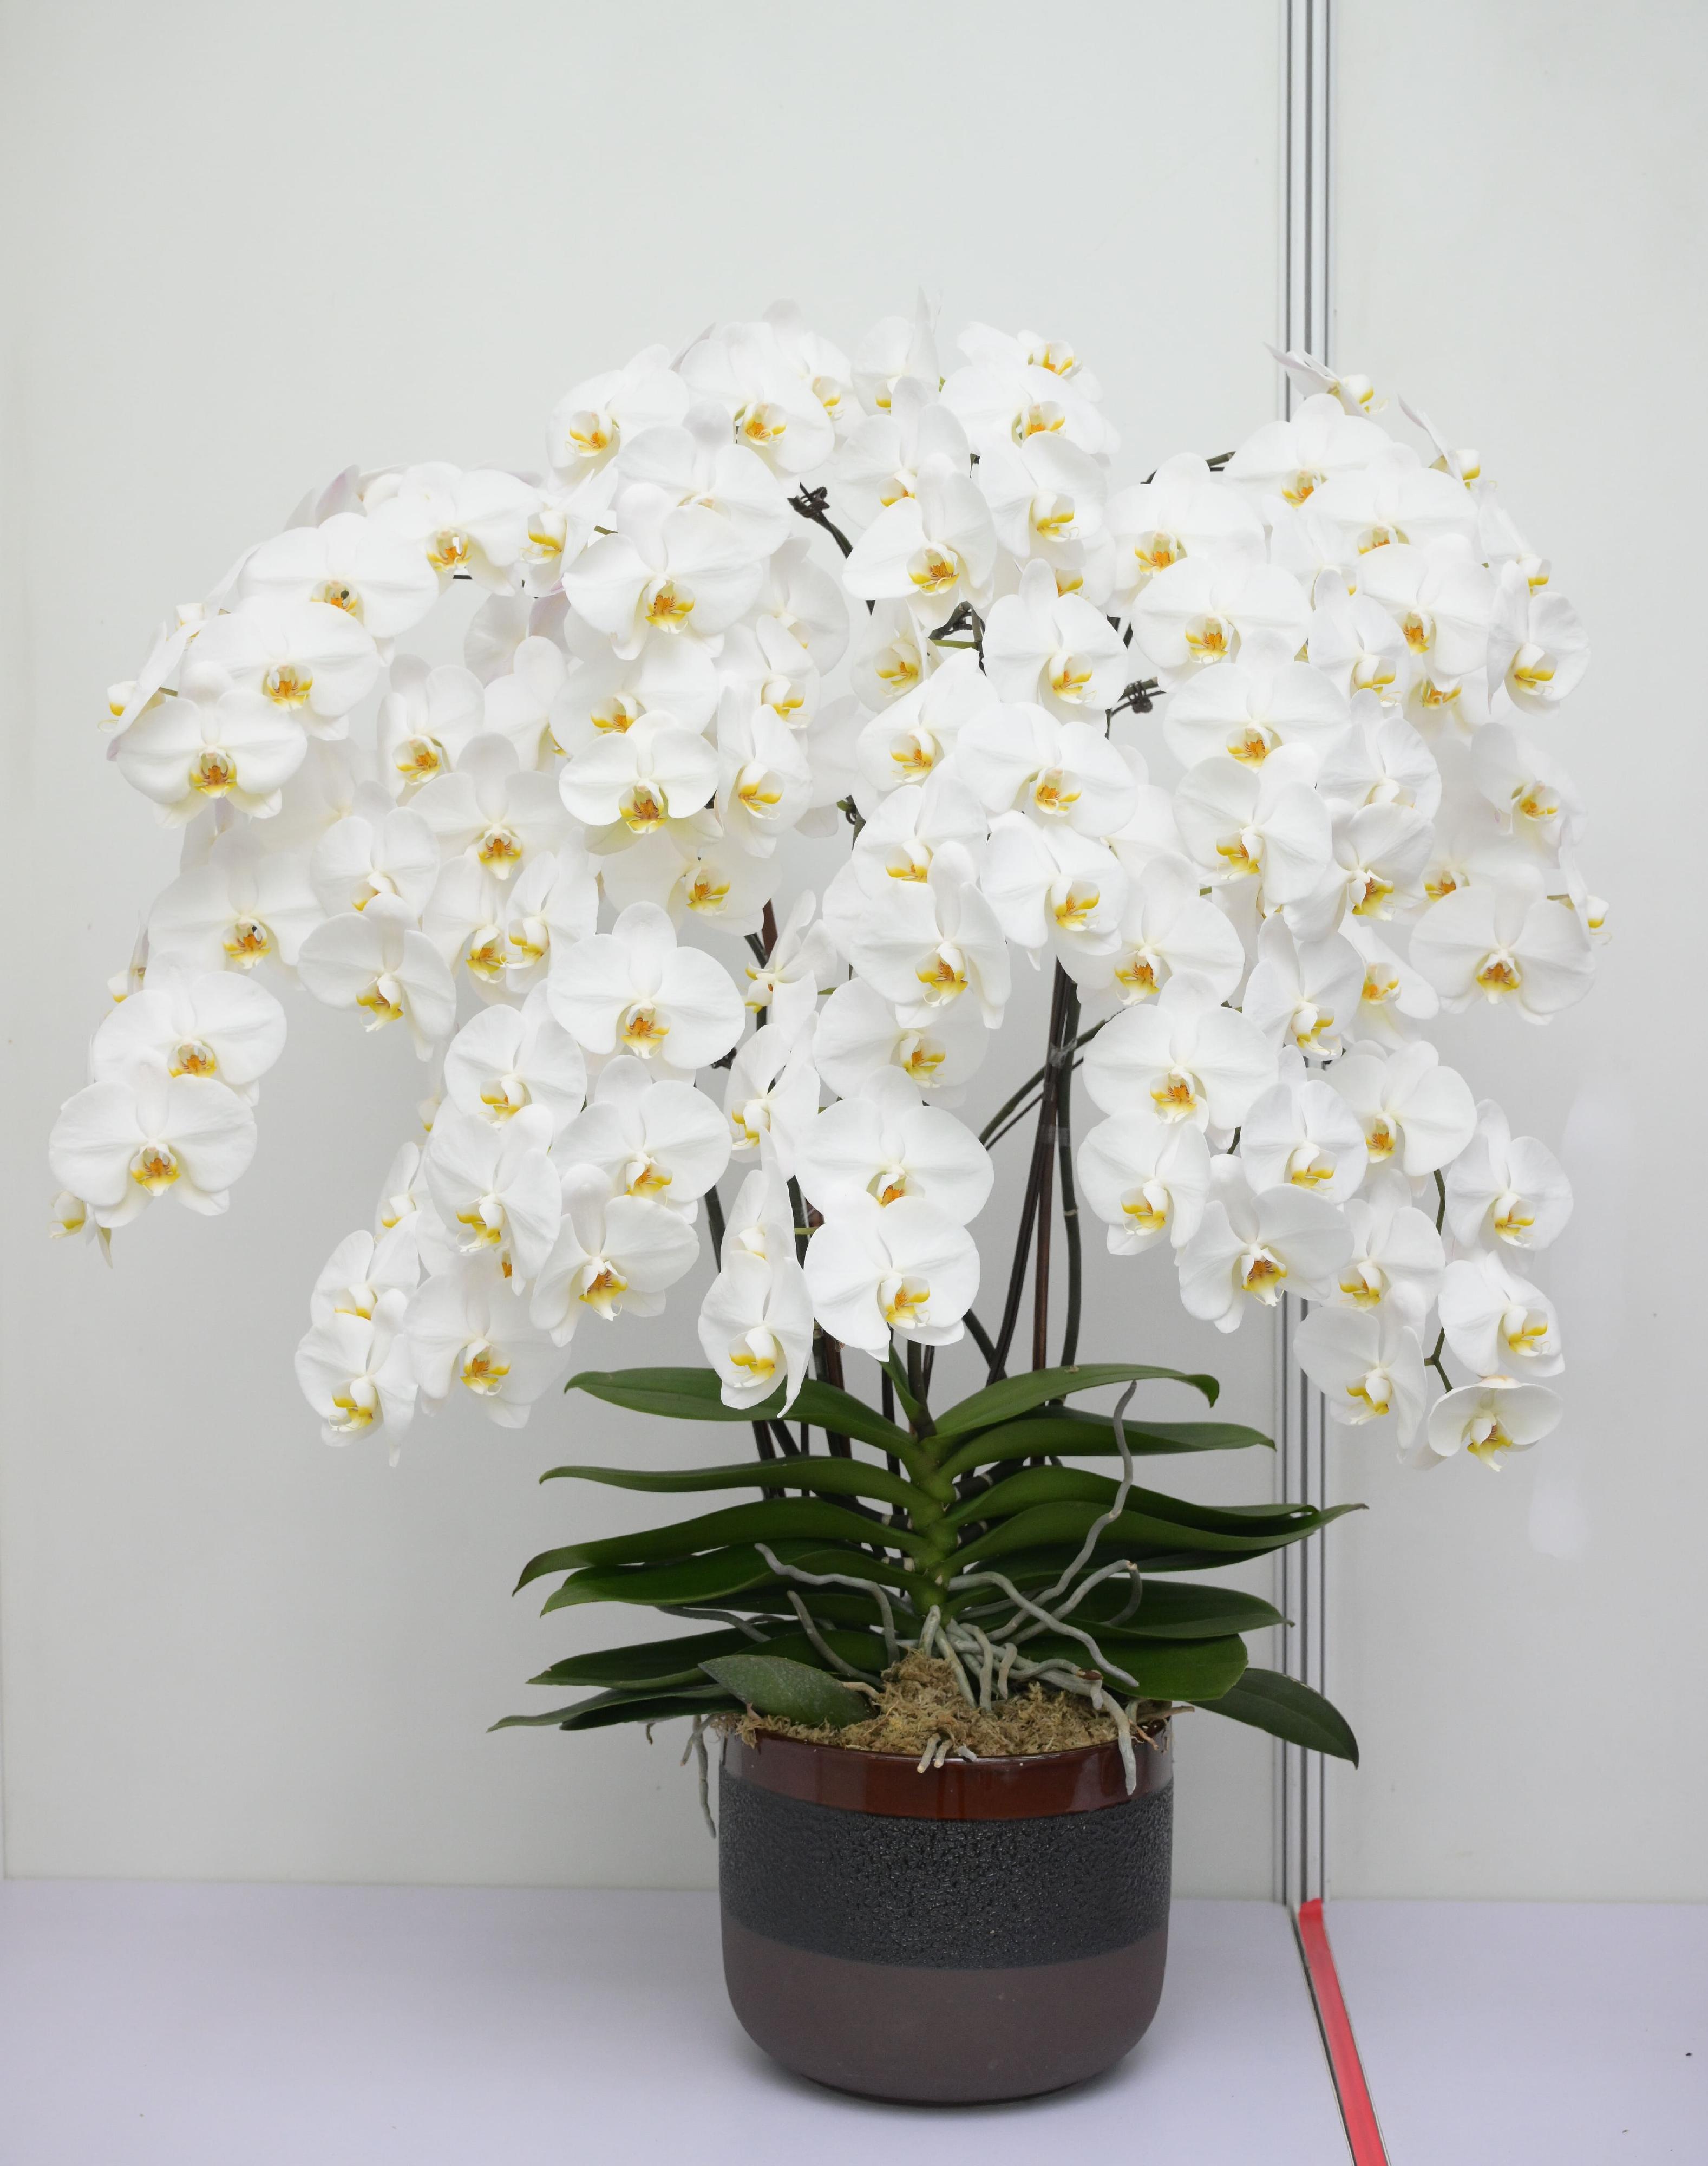 香港花卉展览的其中一项主要活动——植物展品比赛今日（三月十六日）公布得奖名单，图中一盆形态优美的兰花为公开组全场总冠军展品。
